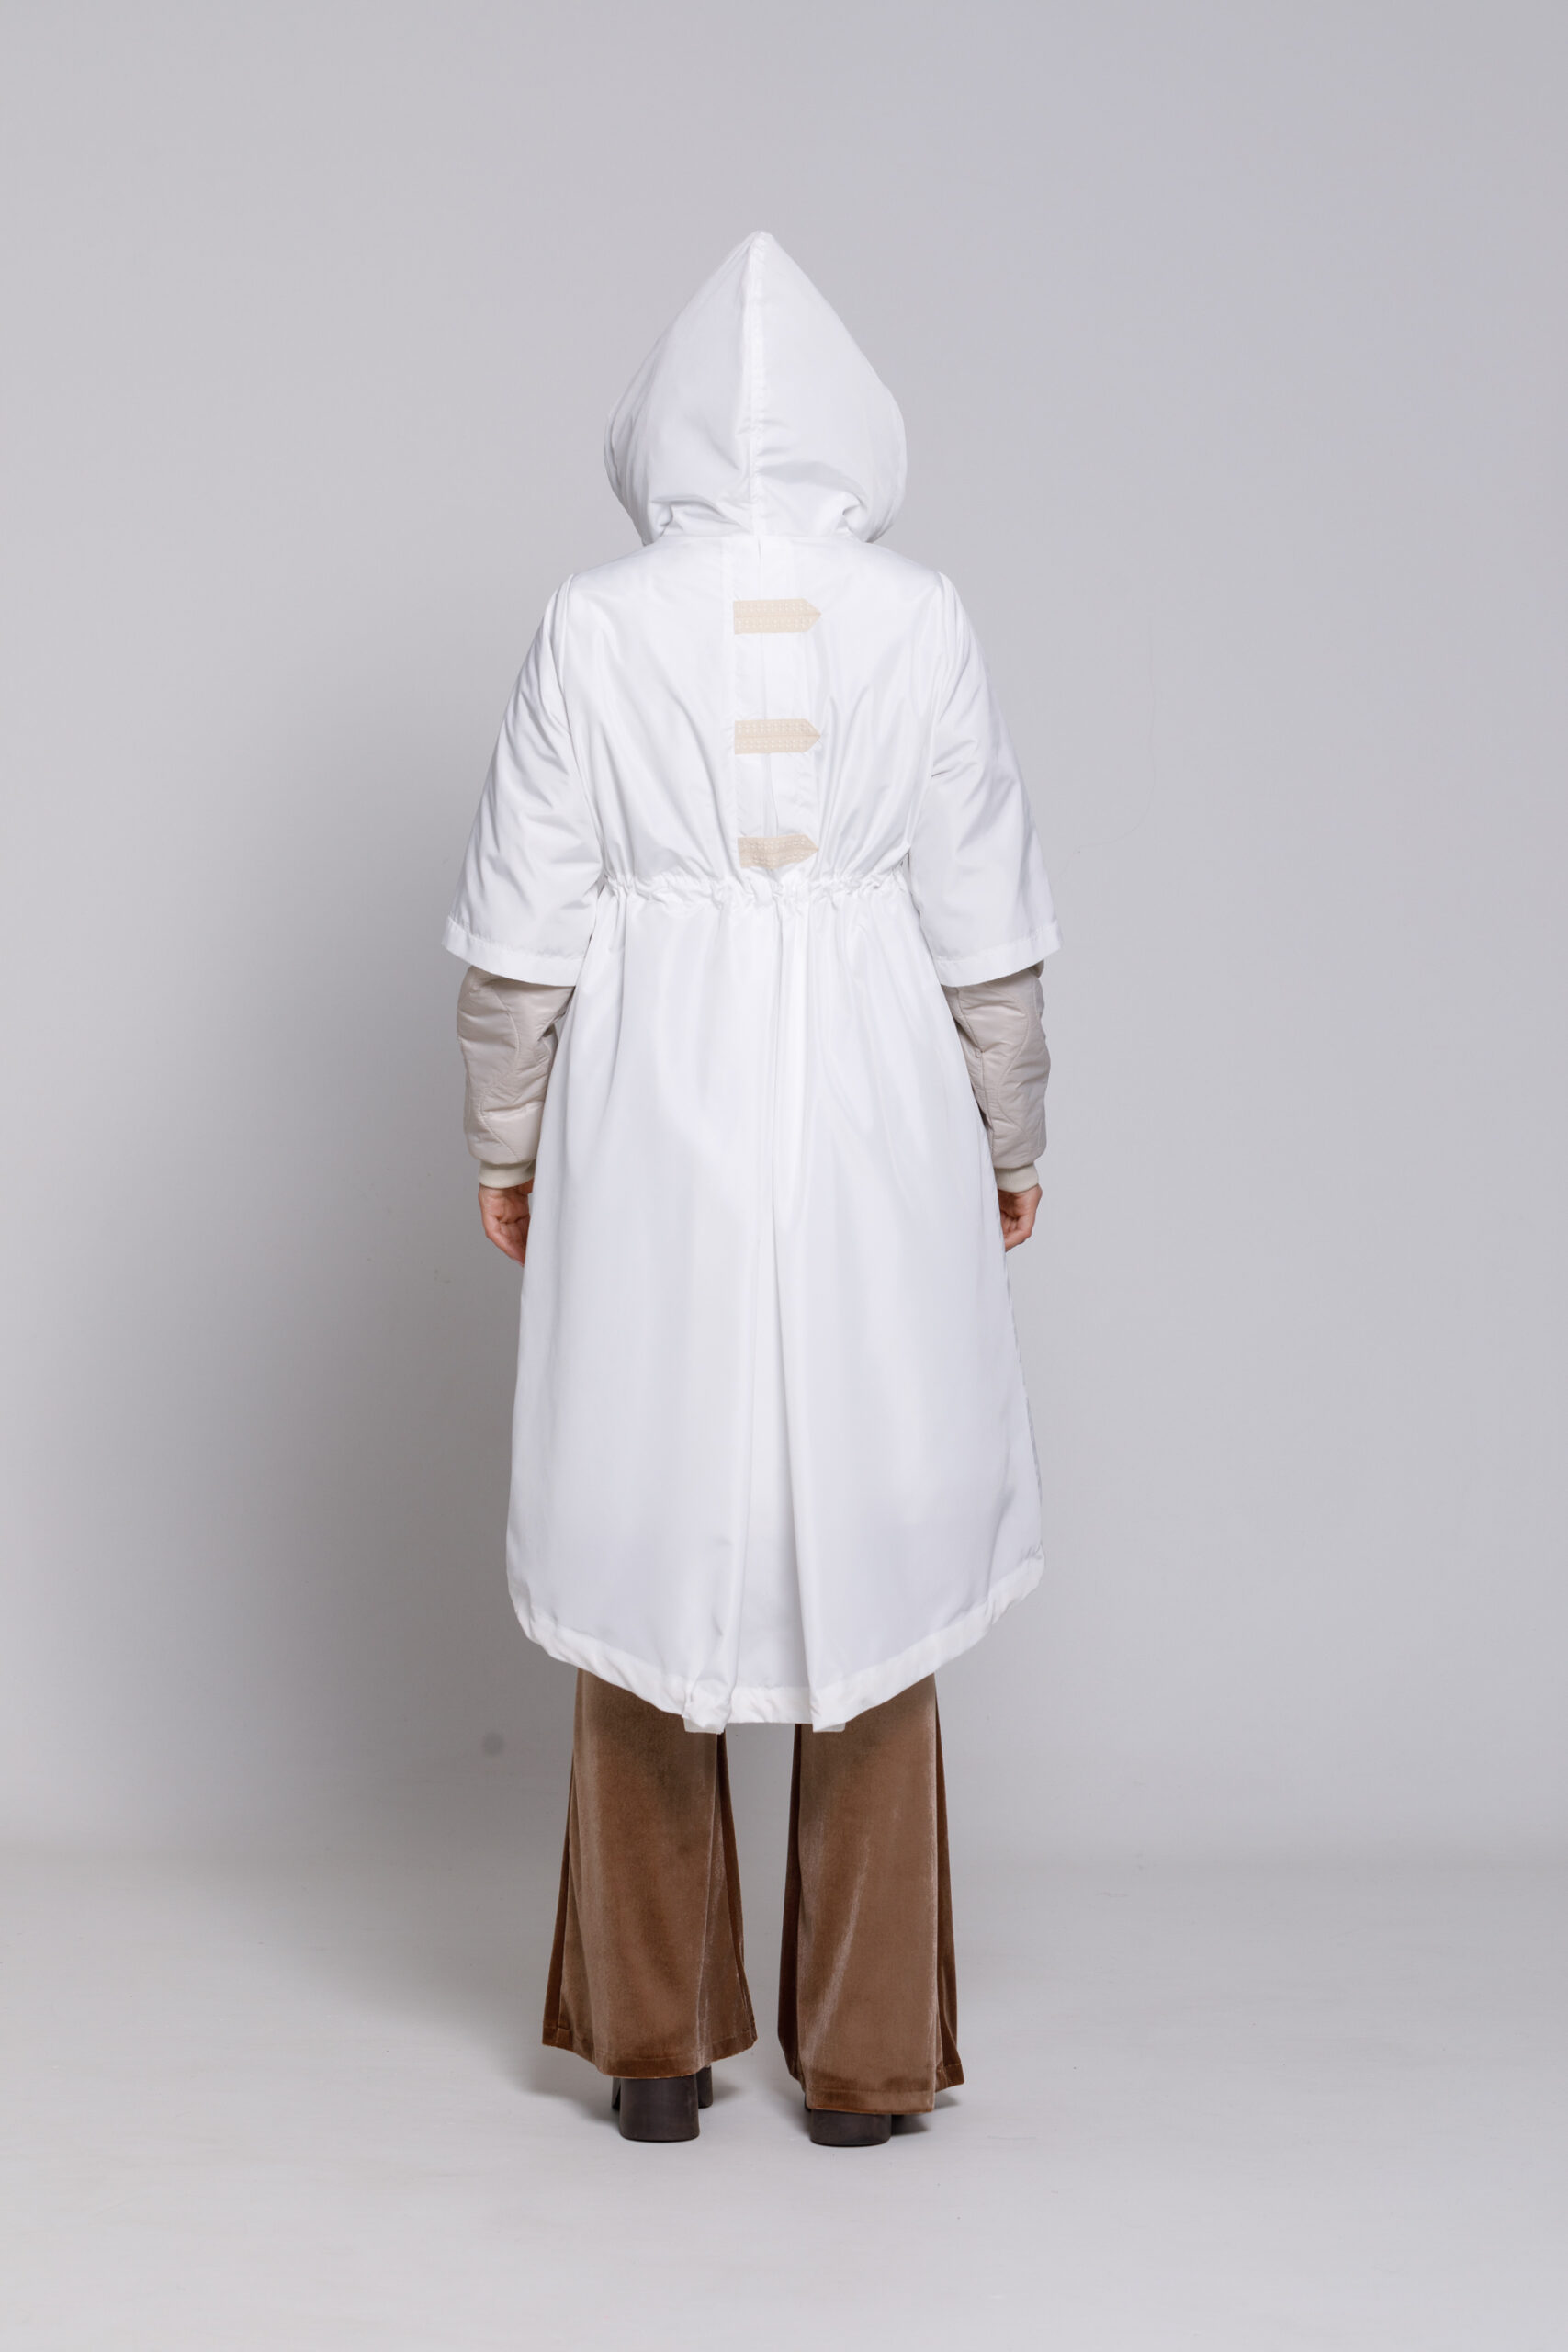 Jacheta ZURY alba din matlasat. Materiale naturale, design unicat, cu broderie si aplicatii handmade